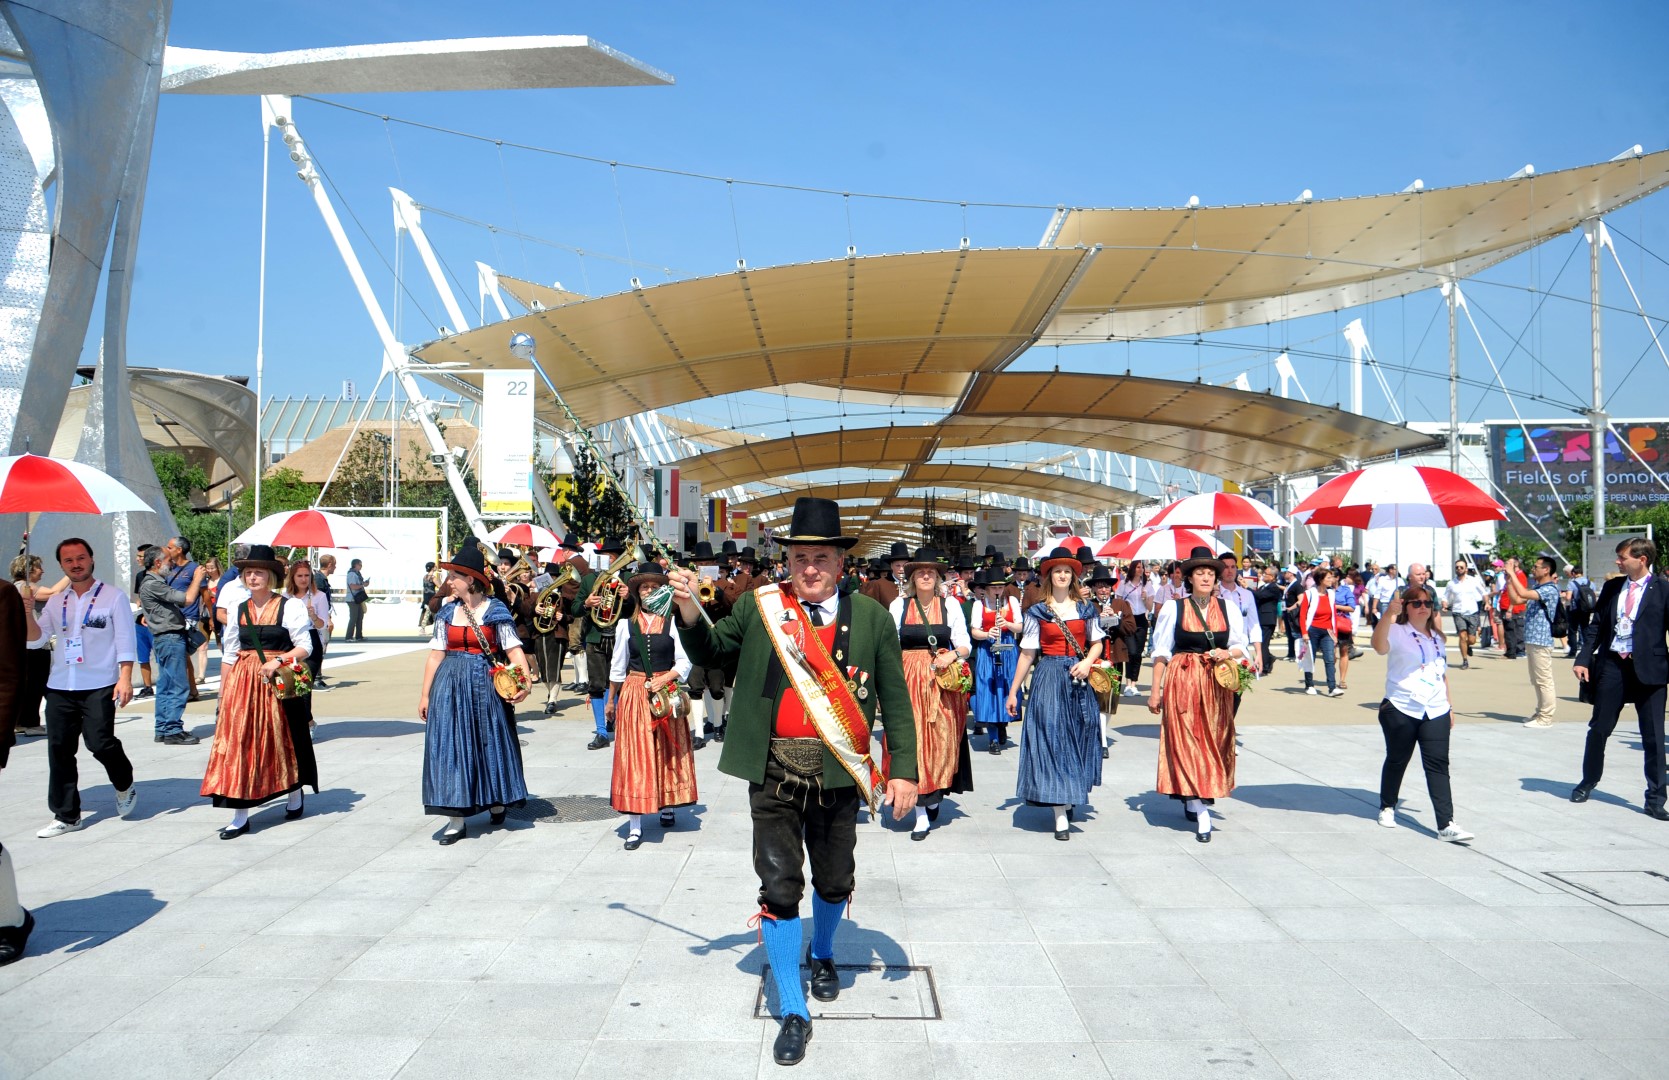 Expo Milano 2015: la giornata nazionale dell’Austria, le foto